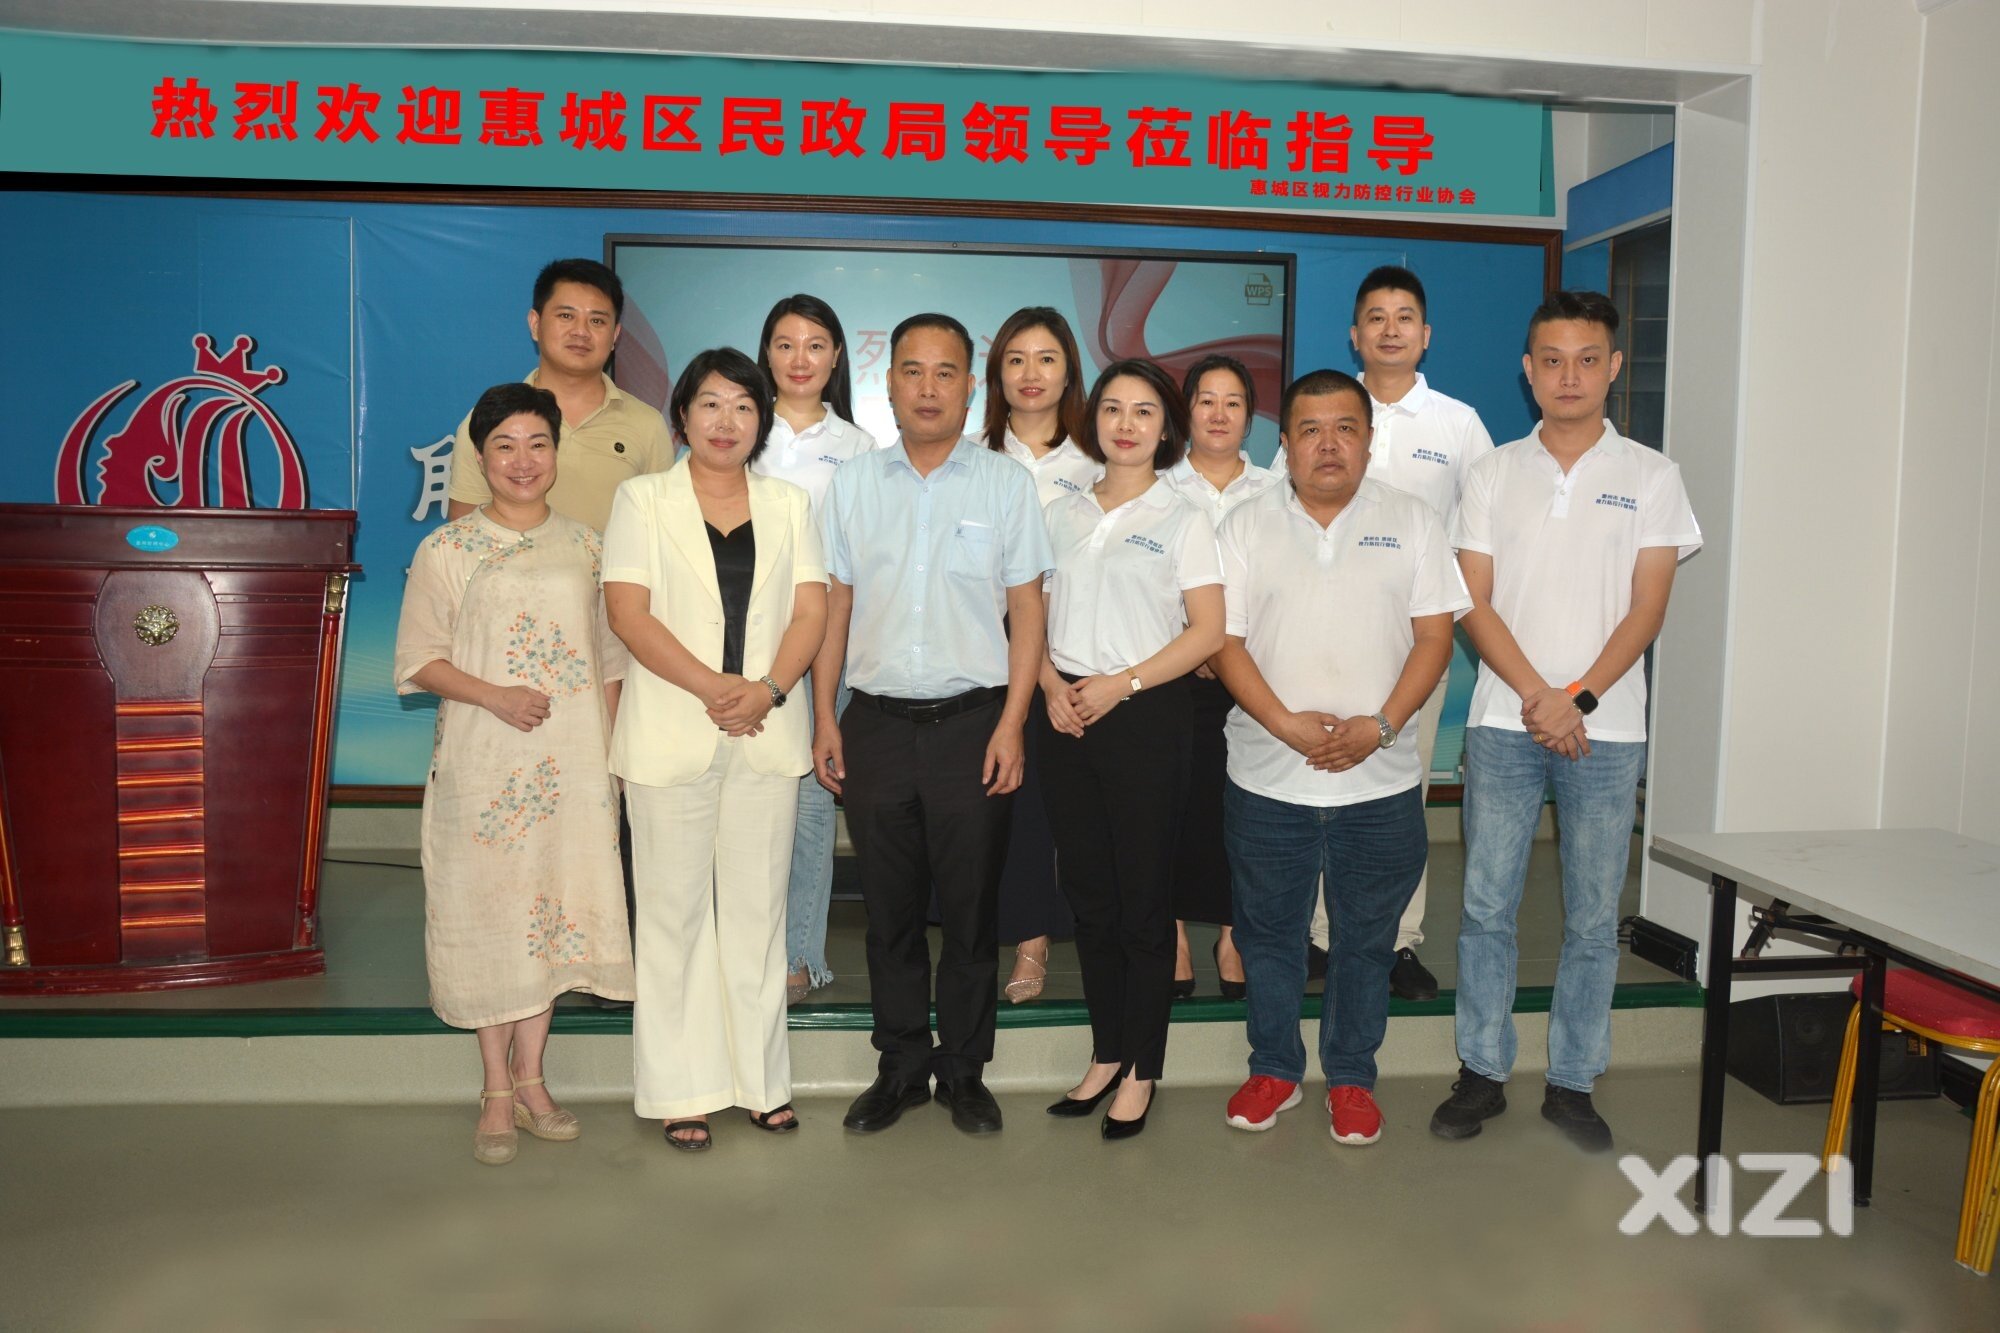 惠城区民政局领导走访惠州市惠城区视力防控行业协会